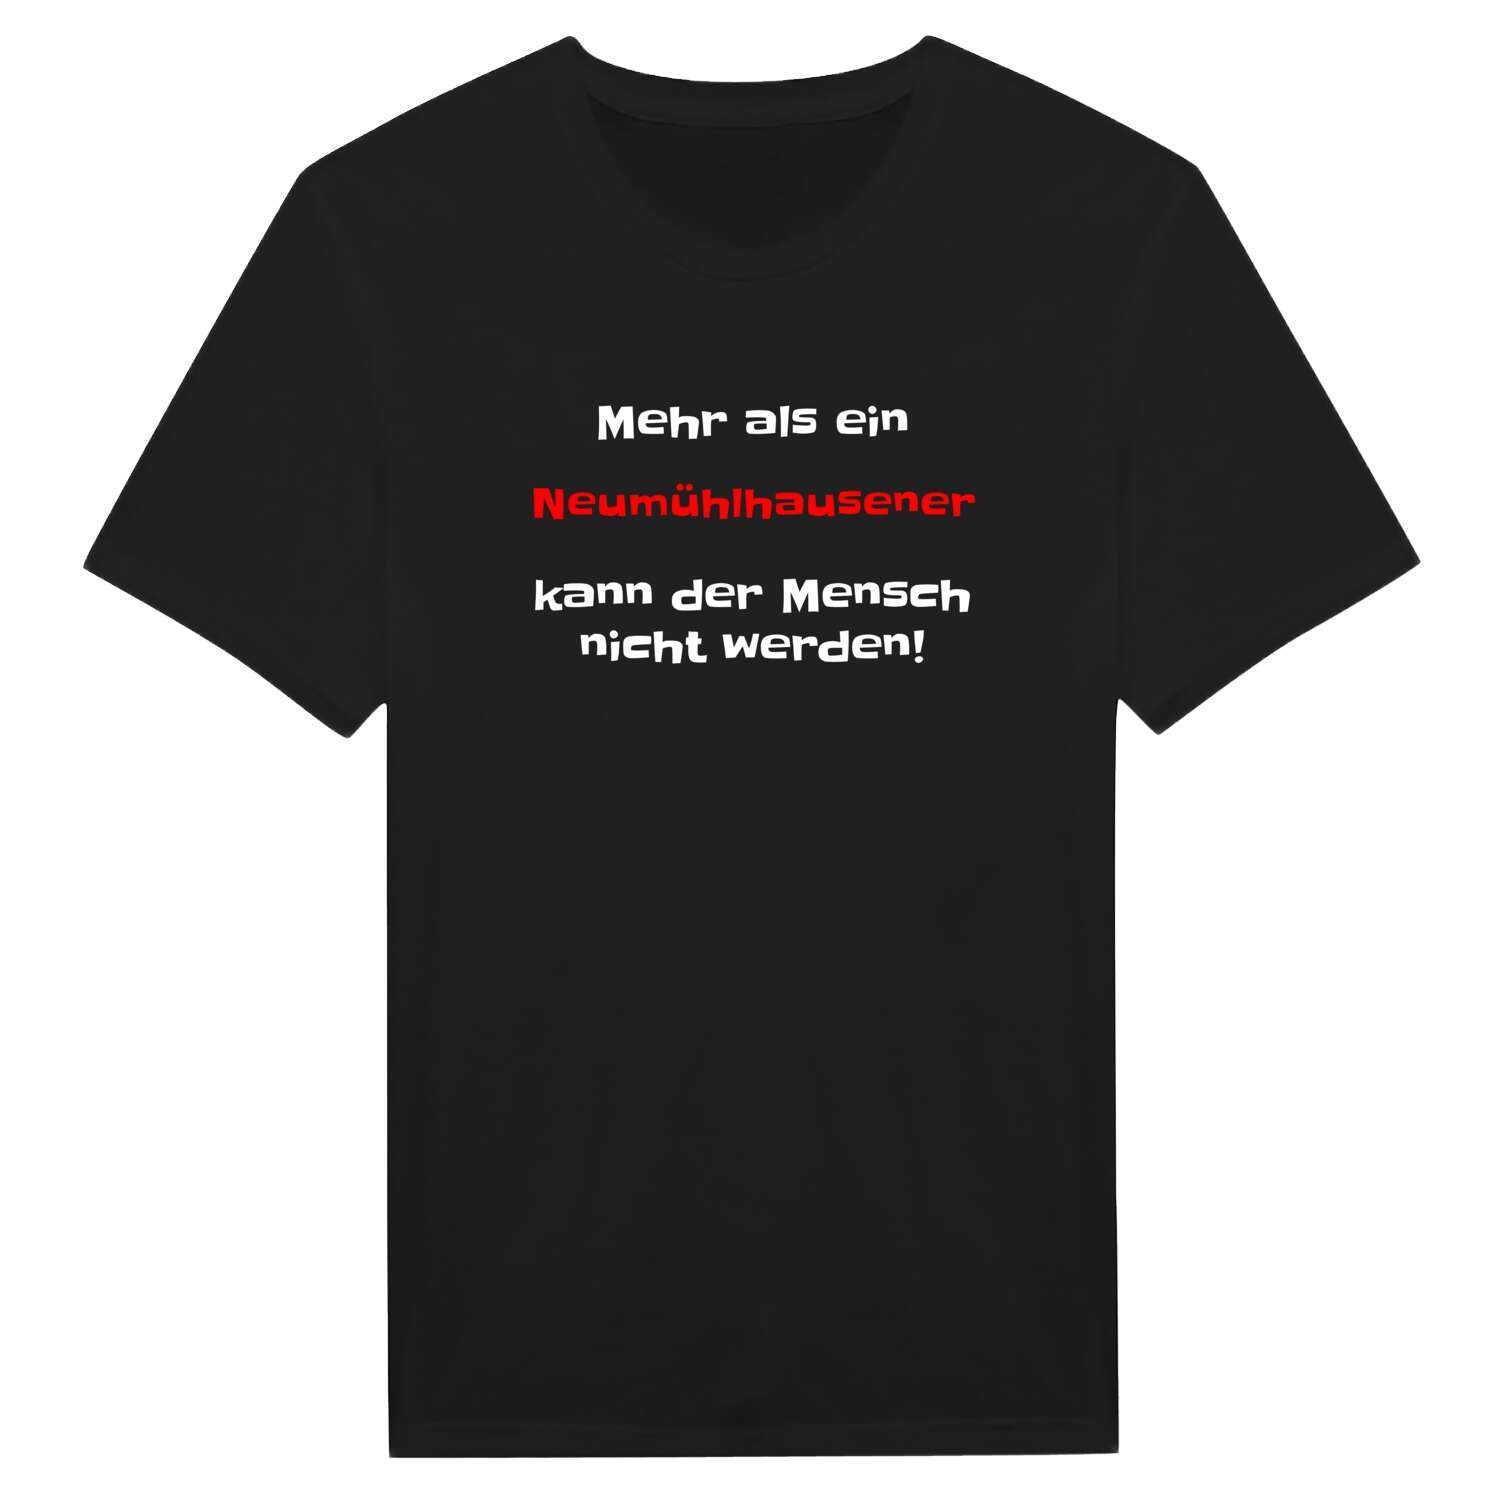 Neumühlhausen T-Shirt »Mehr als ein«